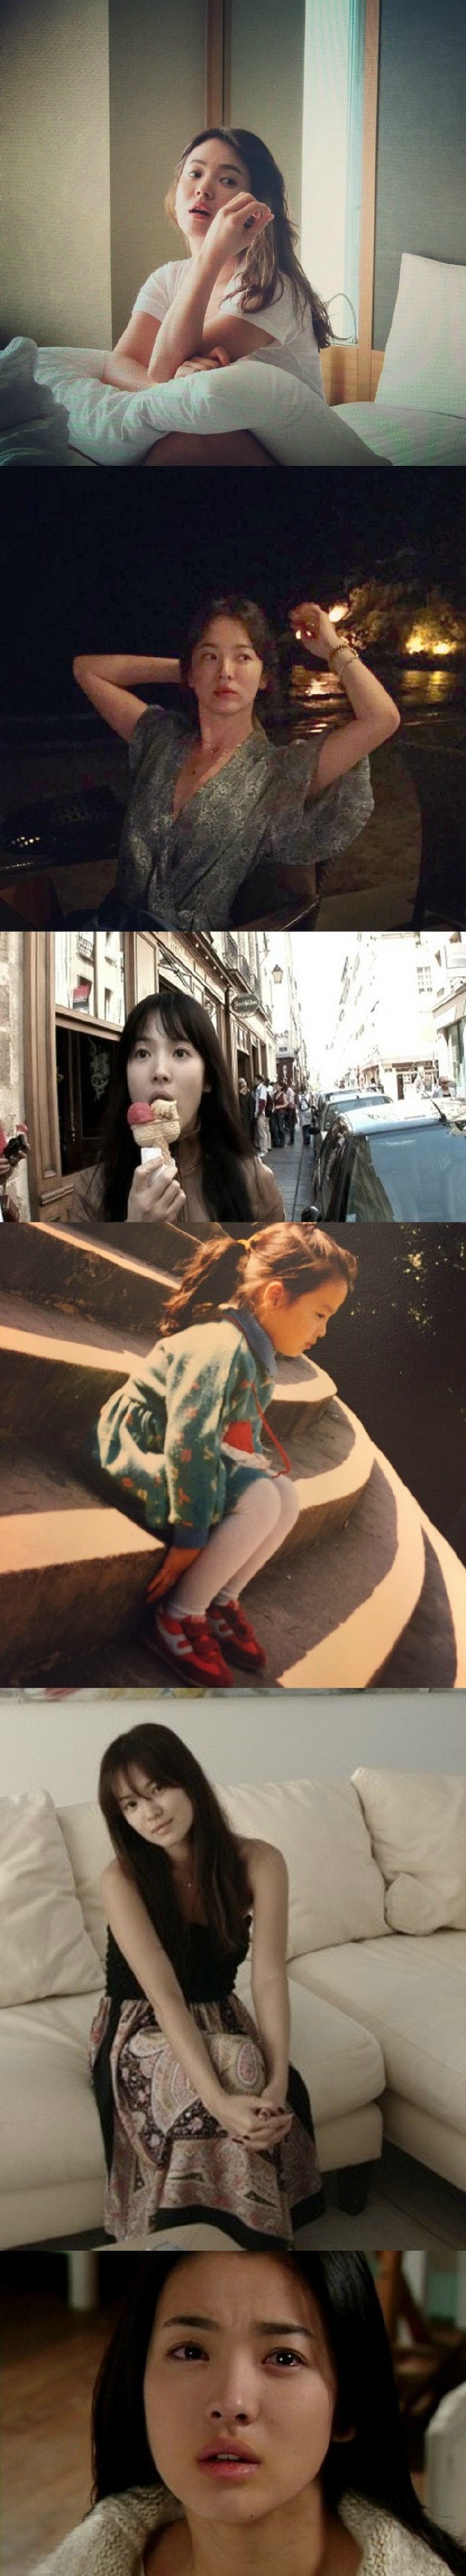 Nhan sắc của Song Hye Kyo: Tạp chí đã đẹp, nhưng xuất sắc nhất là những khoảnh khắc đời thường - Ảnh 4.